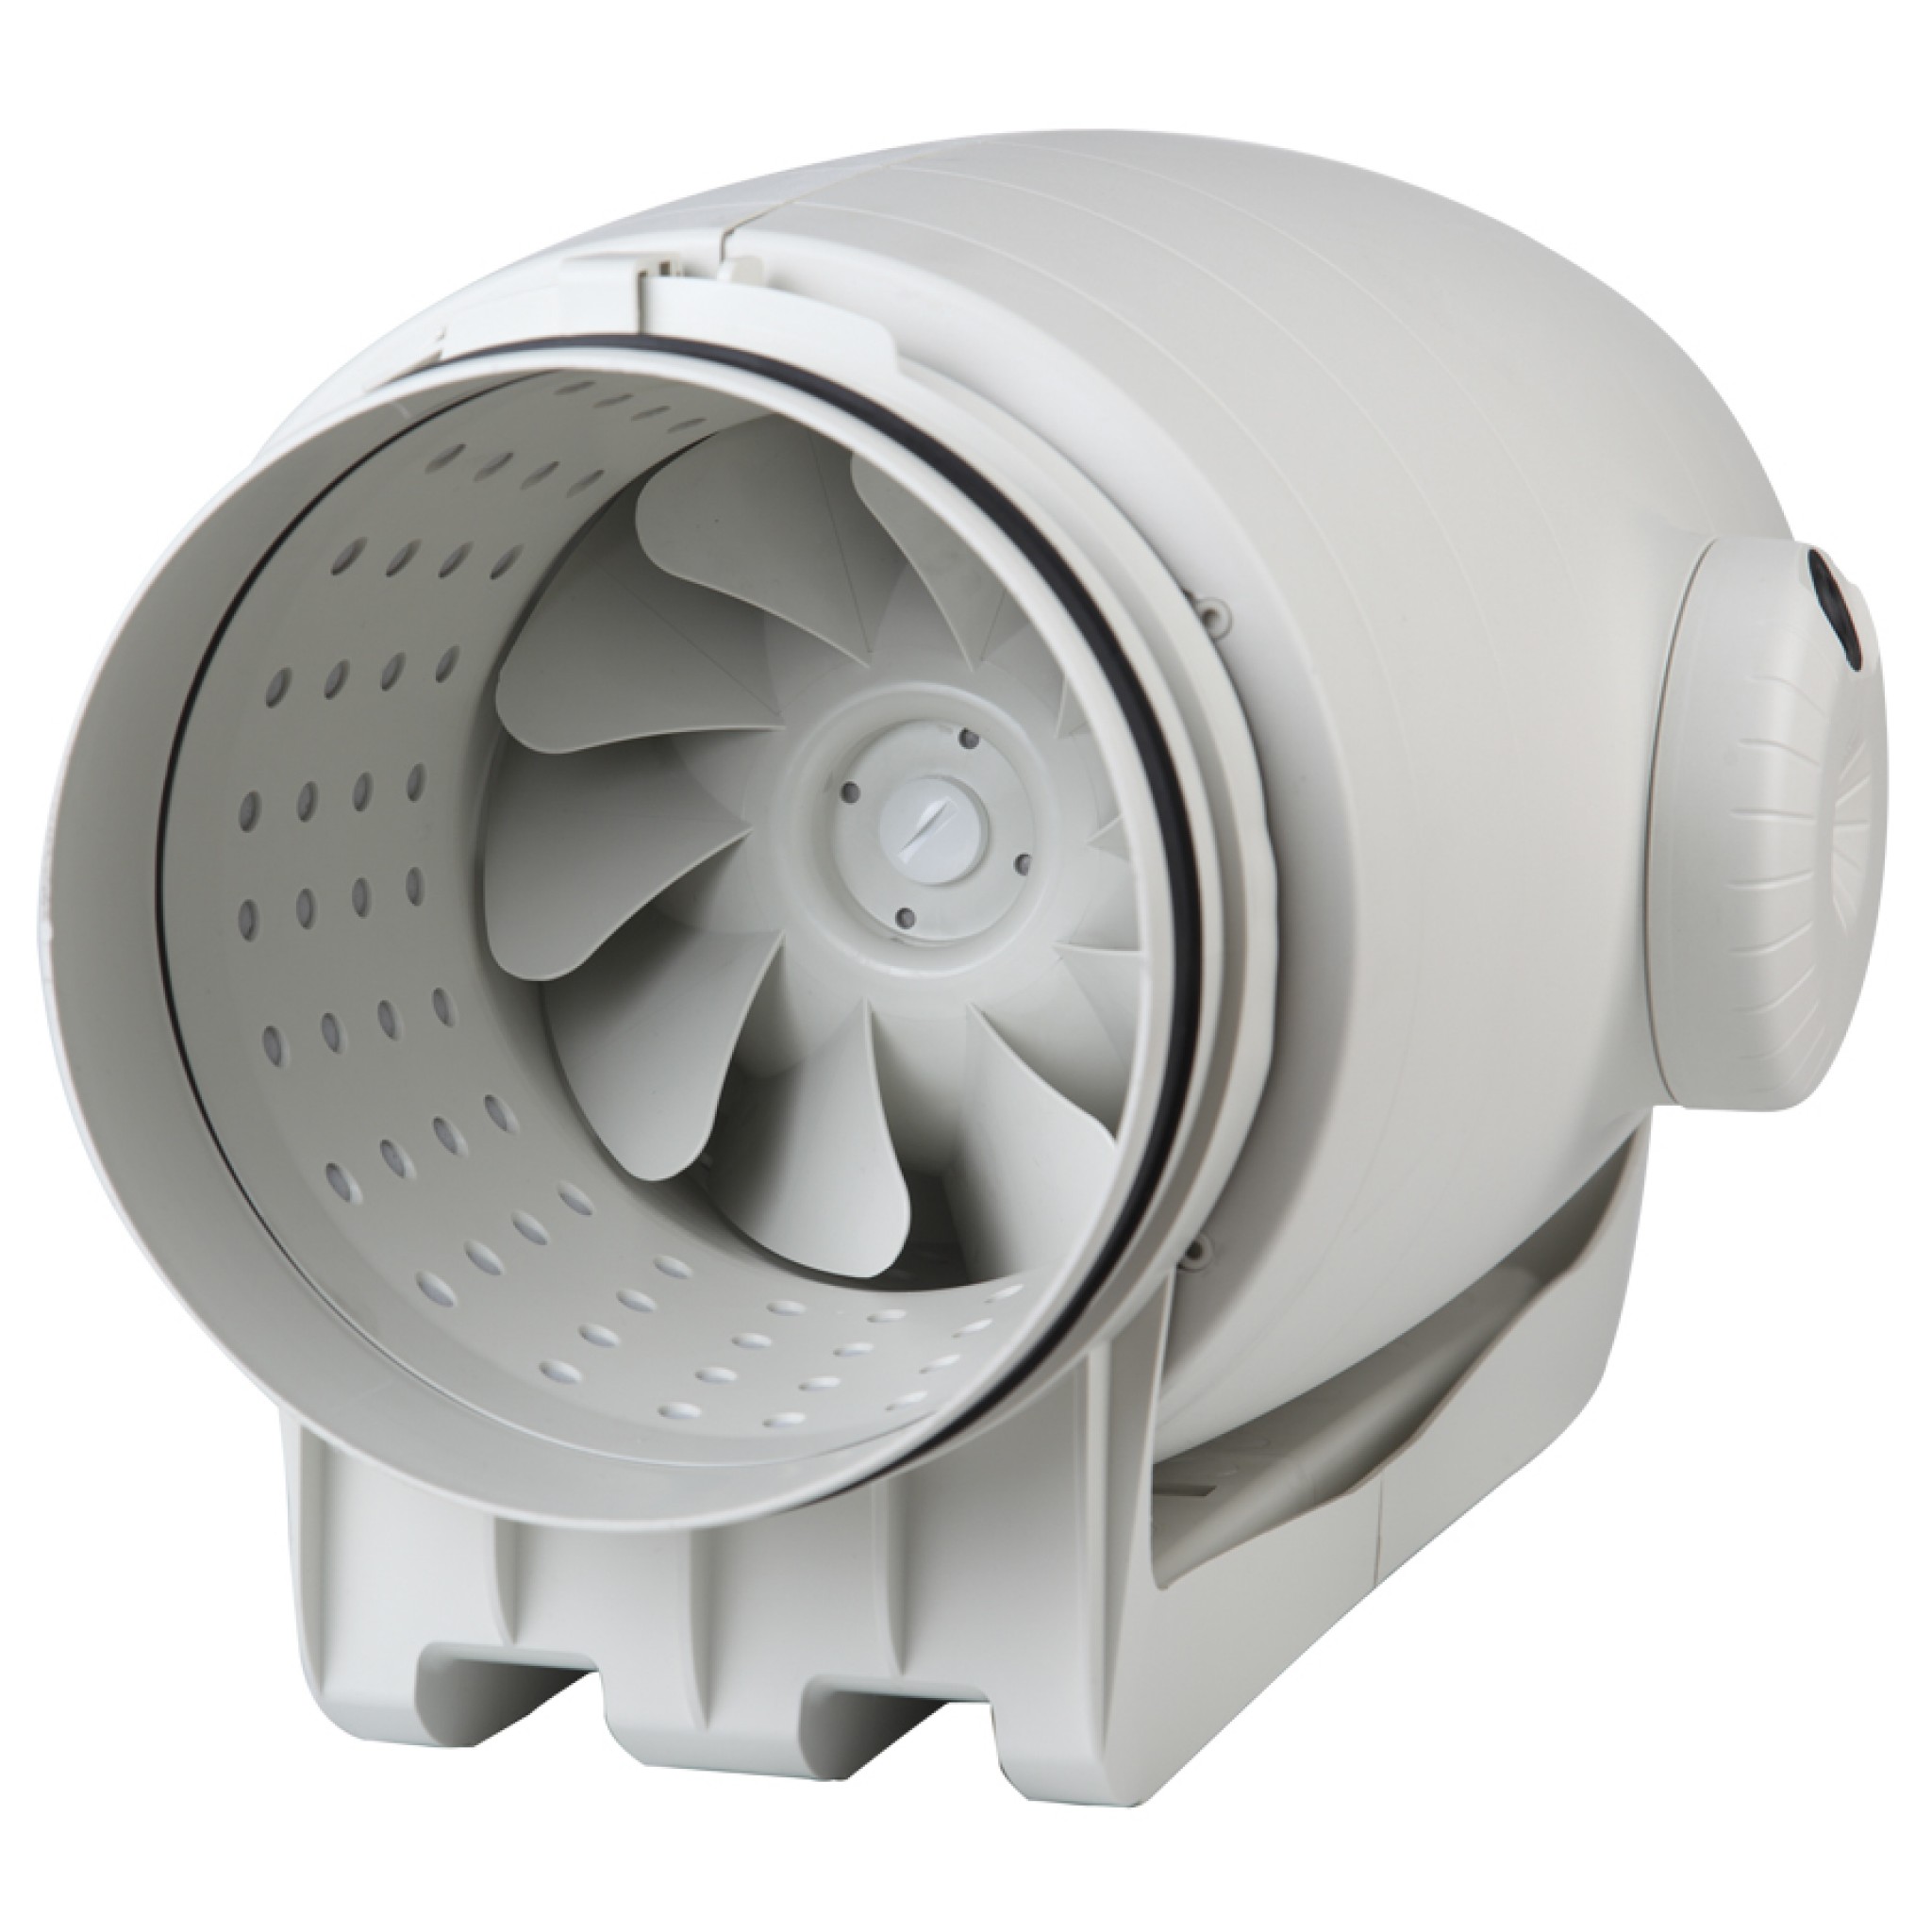 Характеристики вытяжной канальный вентилятор 200 мм Soler&Palau TD-800/200 Silent